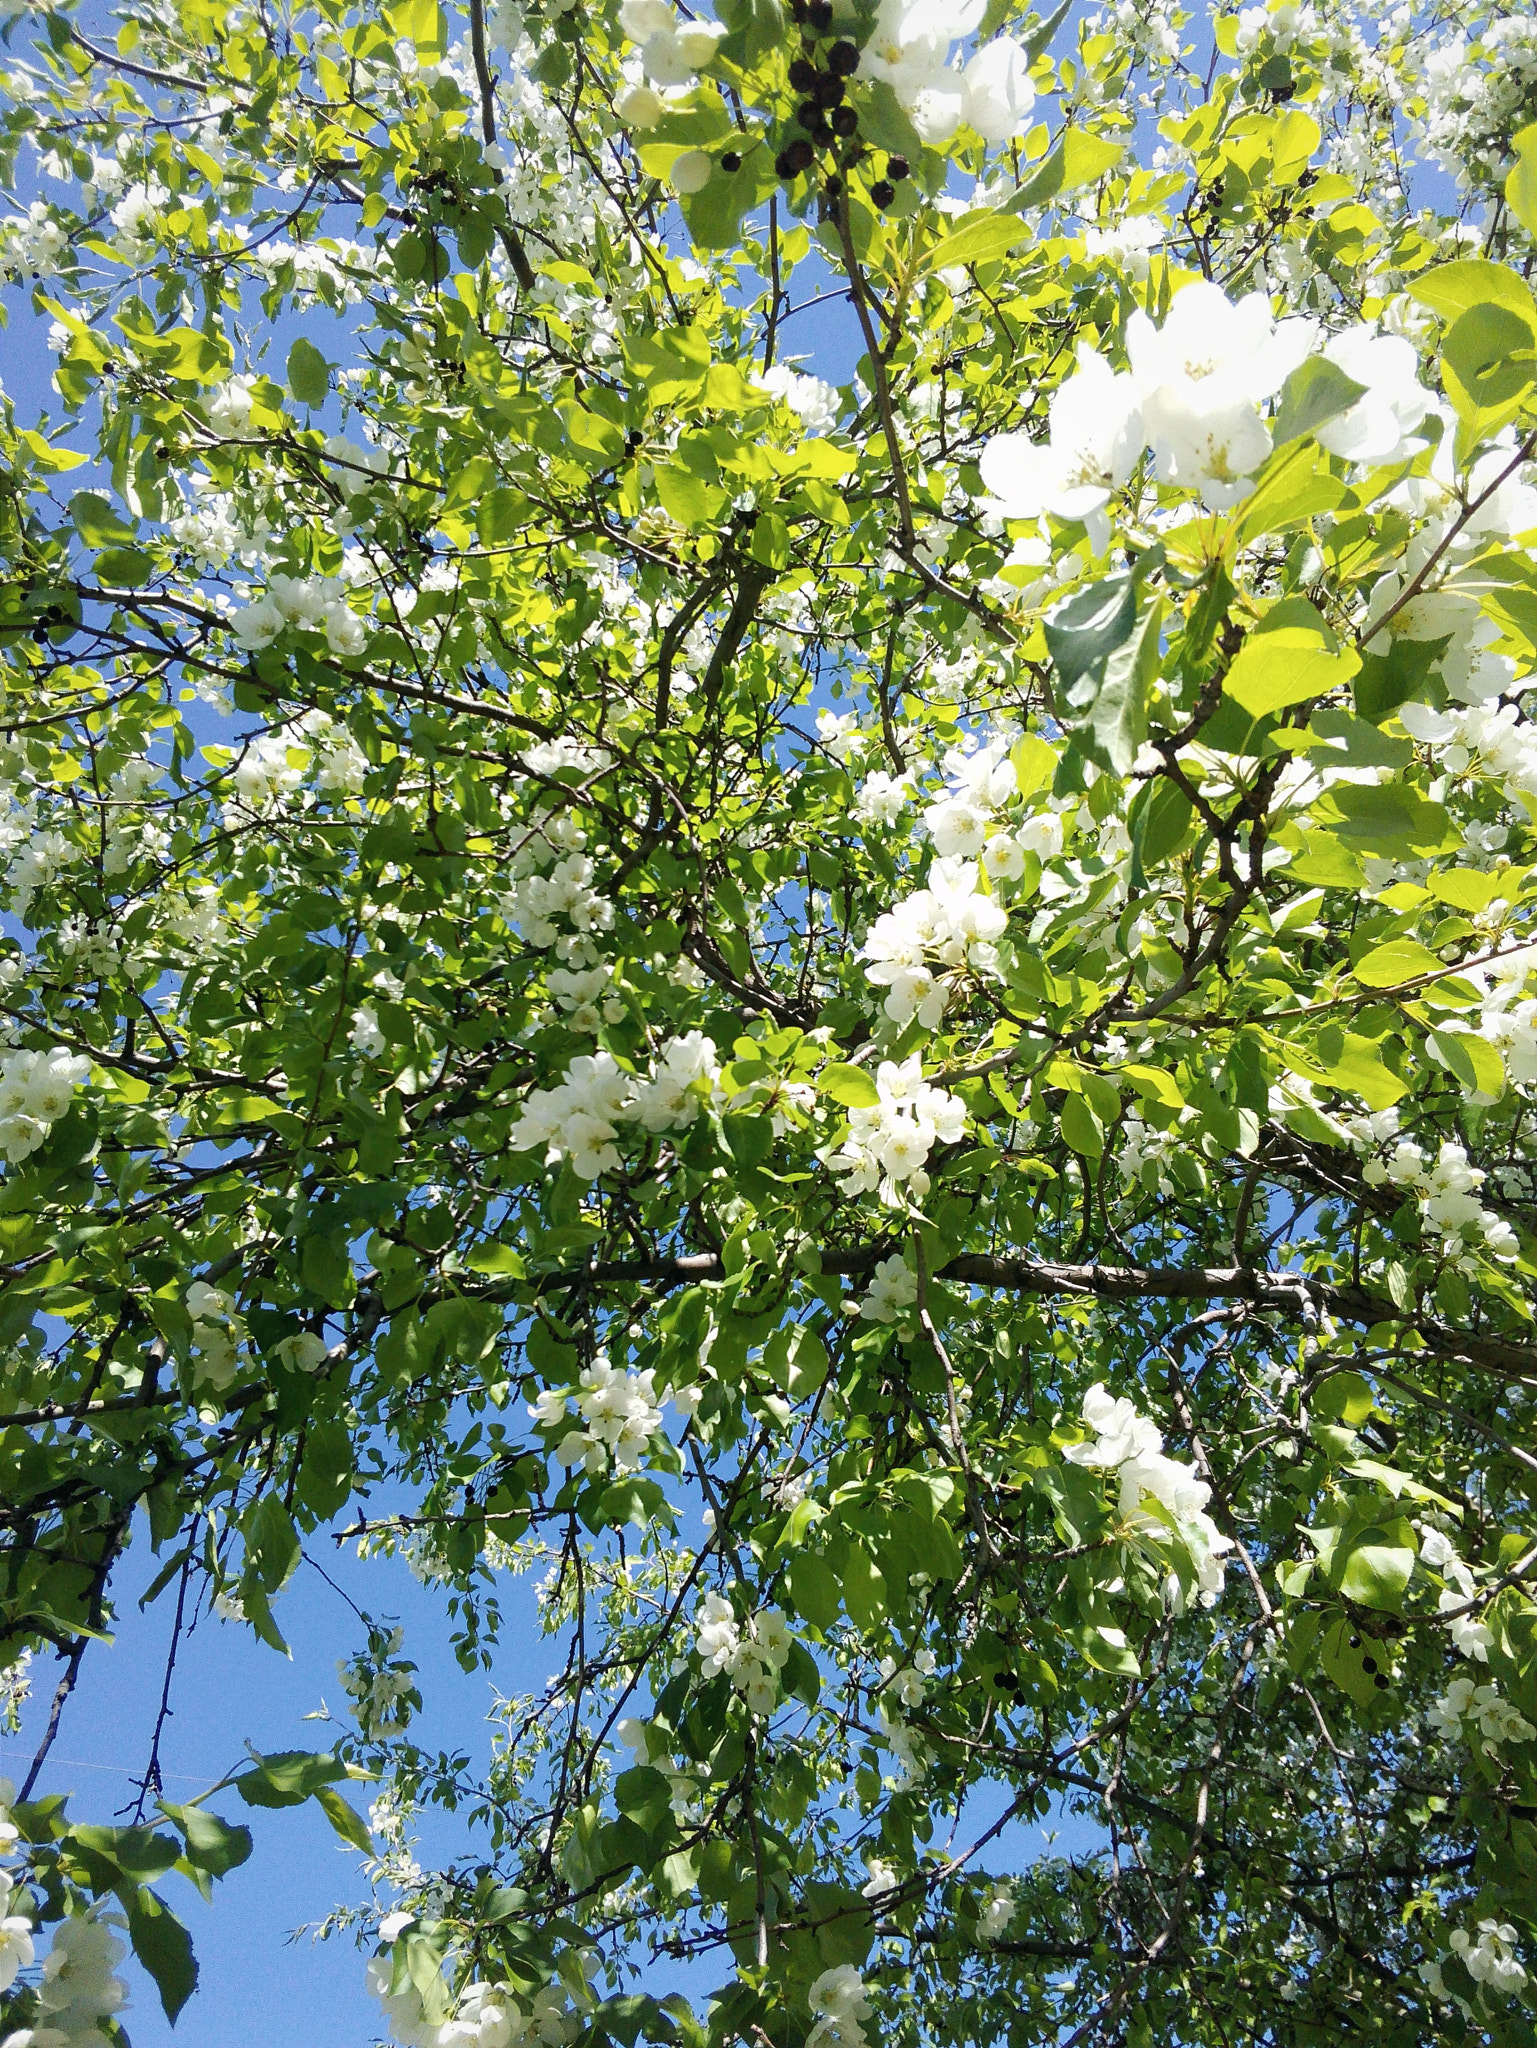 HUAWEI Y541-U02 sample photo. Apple trees in bloom. photography